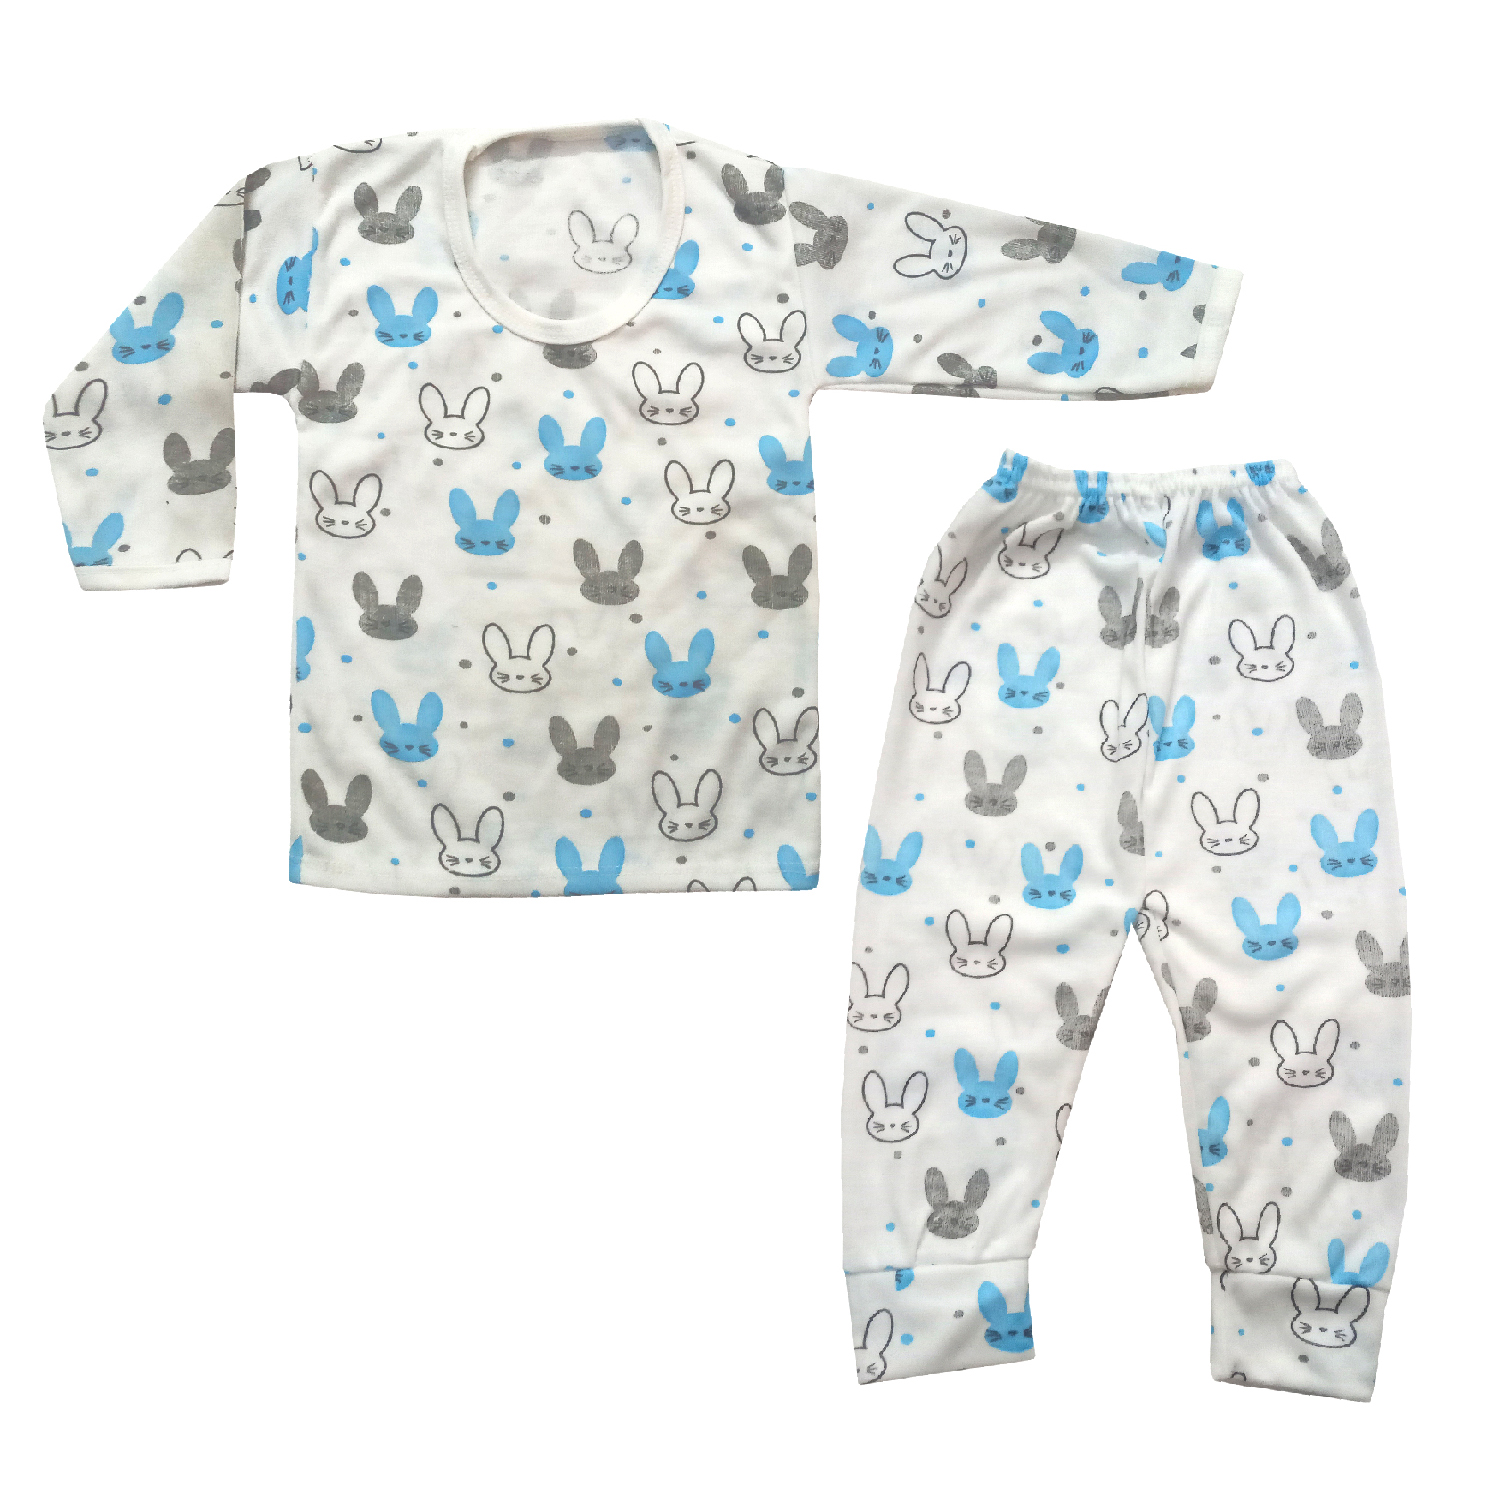 ست تی شرت و شلوار نوزادی مدل خرگوش BLO